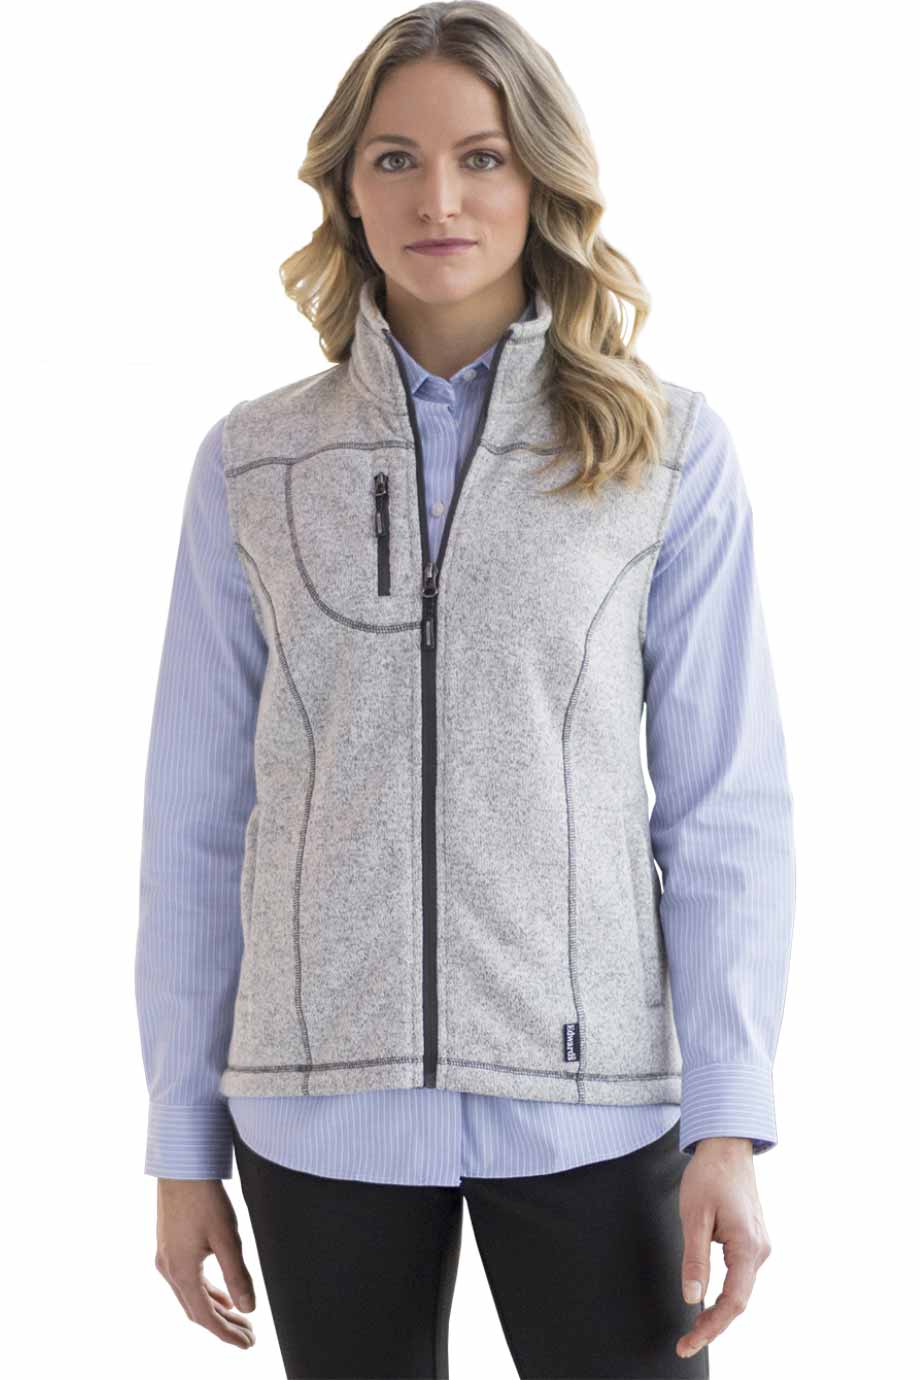 Edwards 6463 Women's Sweater Knit Fleece Vest Grey